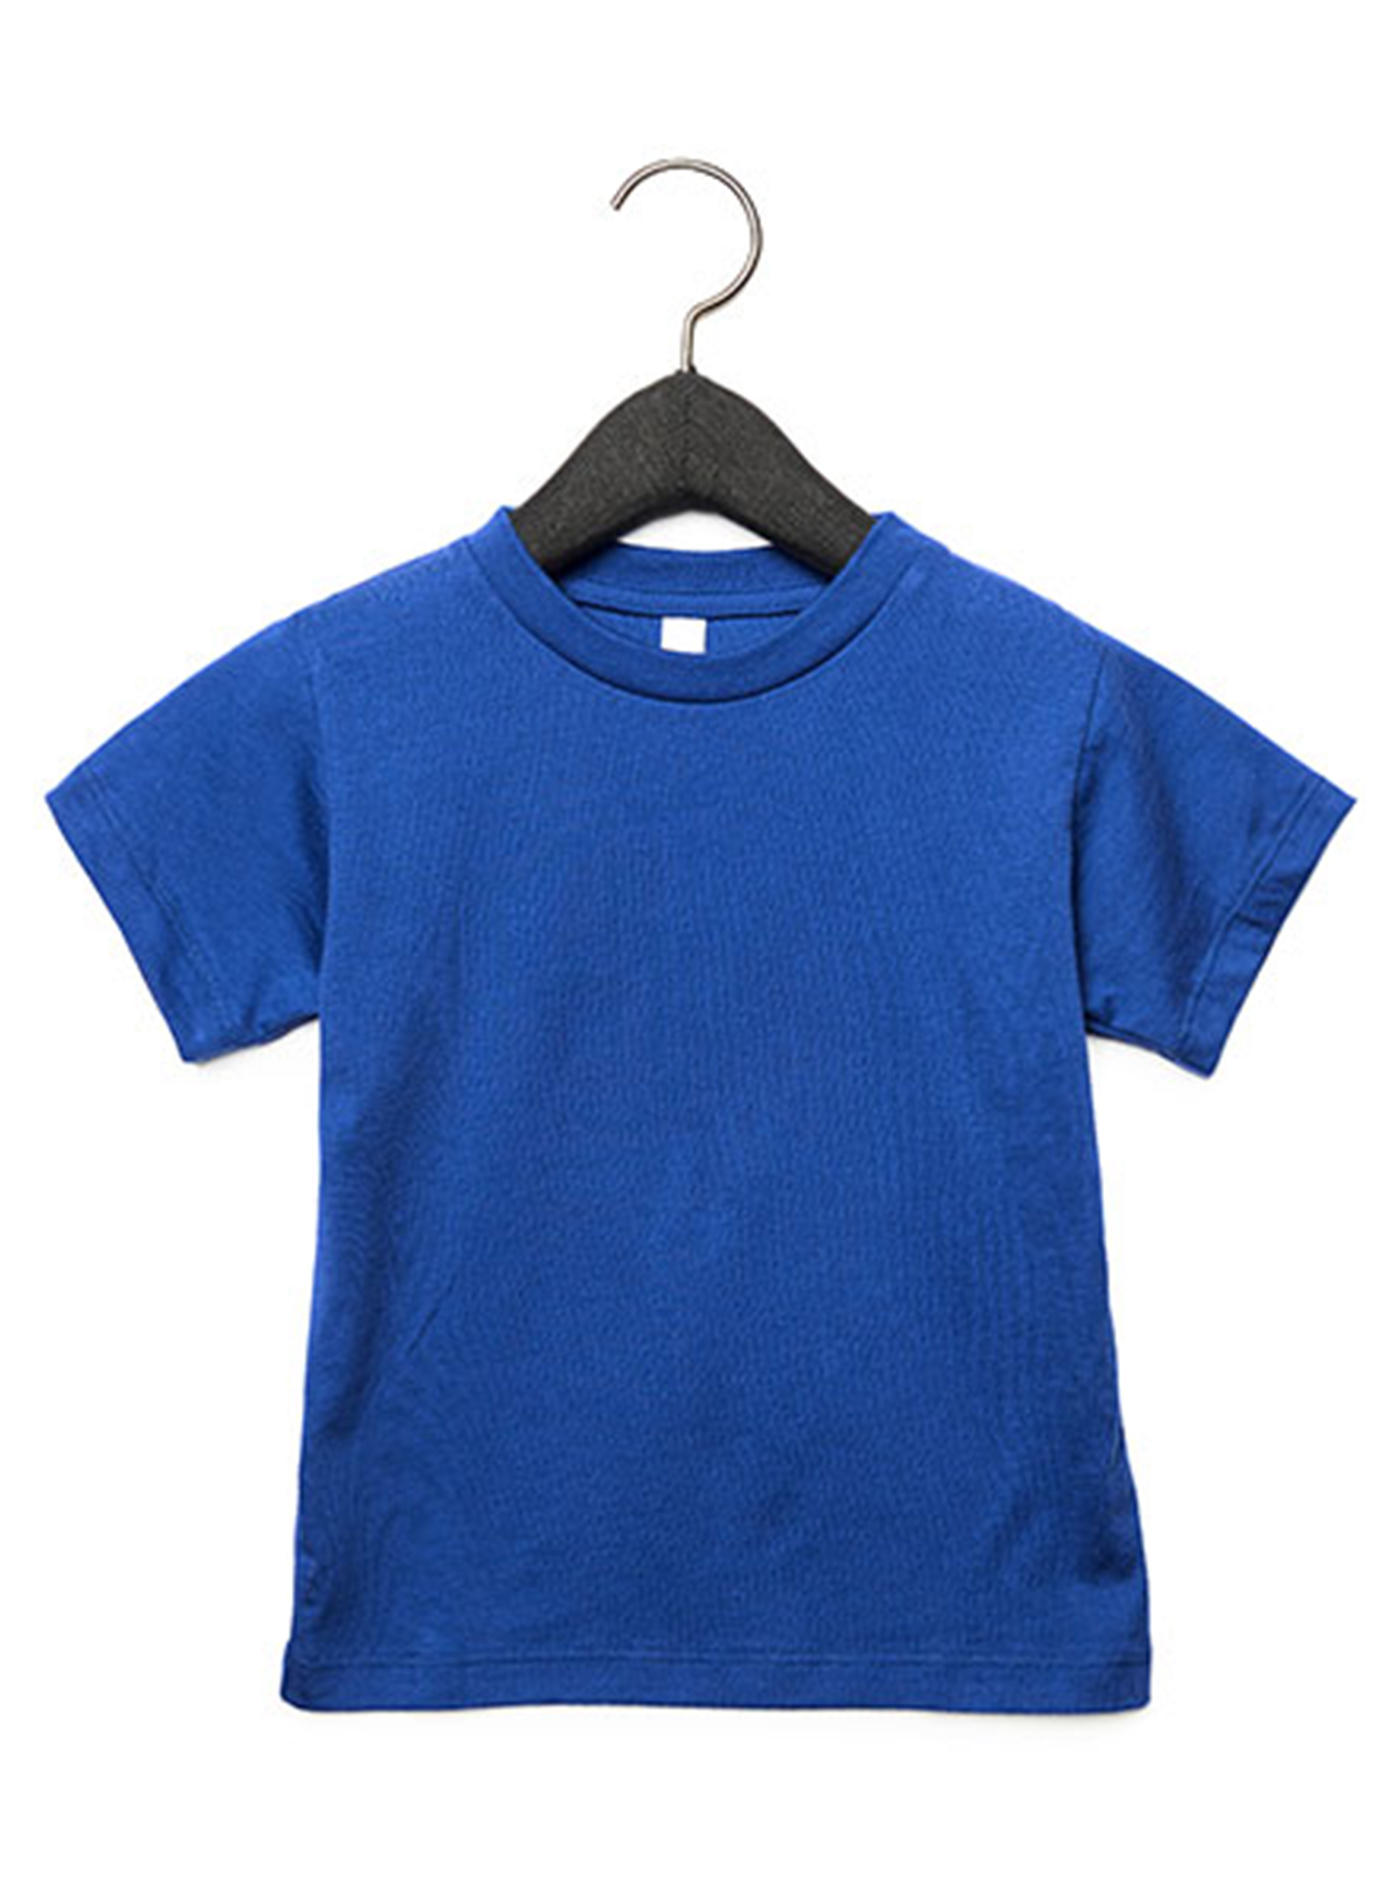 Dětské tričko Jersey - Královská modrá žíhaná 2T (92)